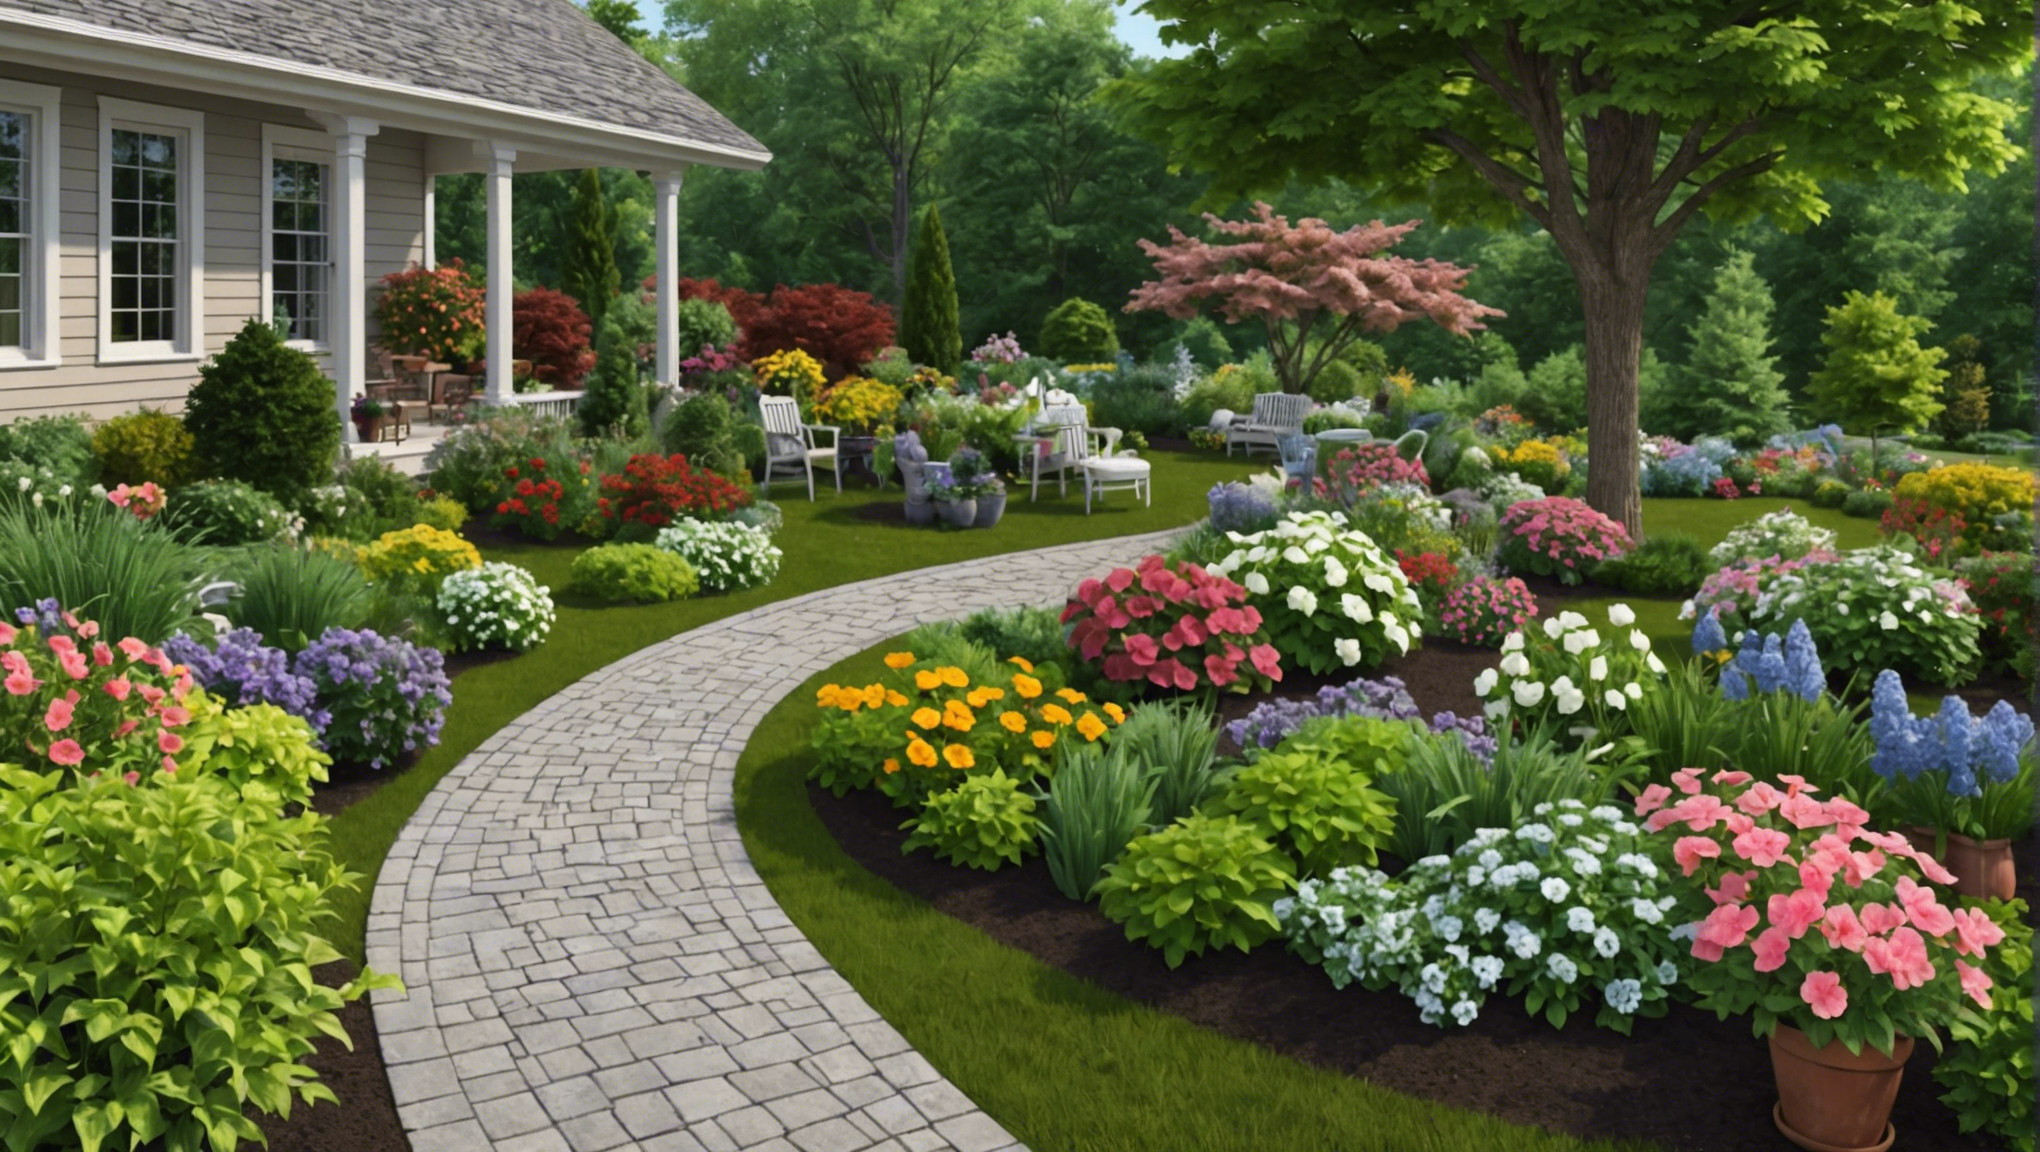 découvrez comment personnaliser votre jardin à votre image en suivant 4 étapes simples. aménagez un espace unique et original qui reflète votre style et vos envies.